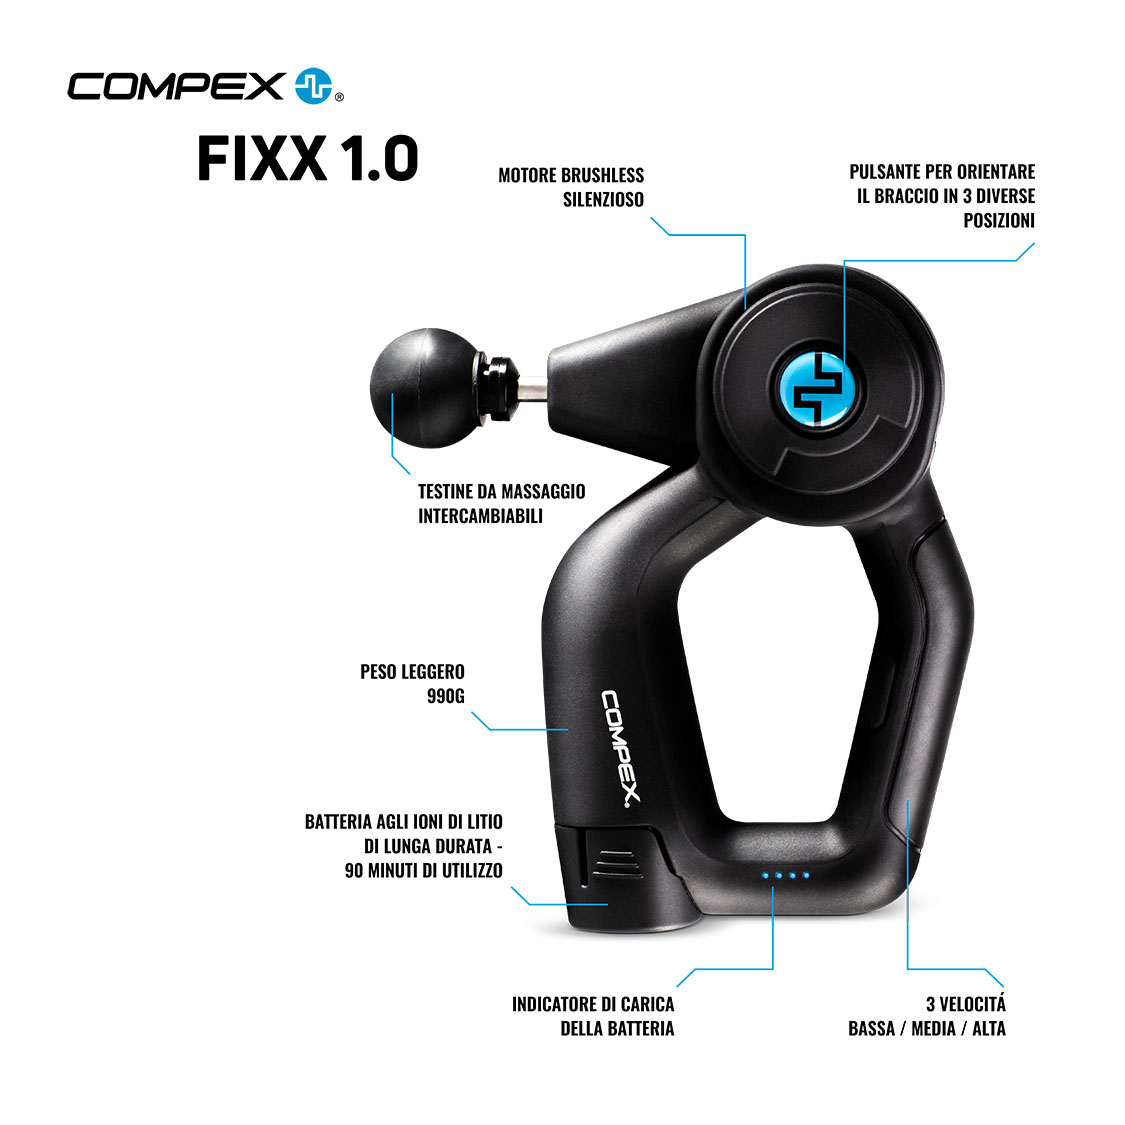 Compex Fixx 1.0 Infographic